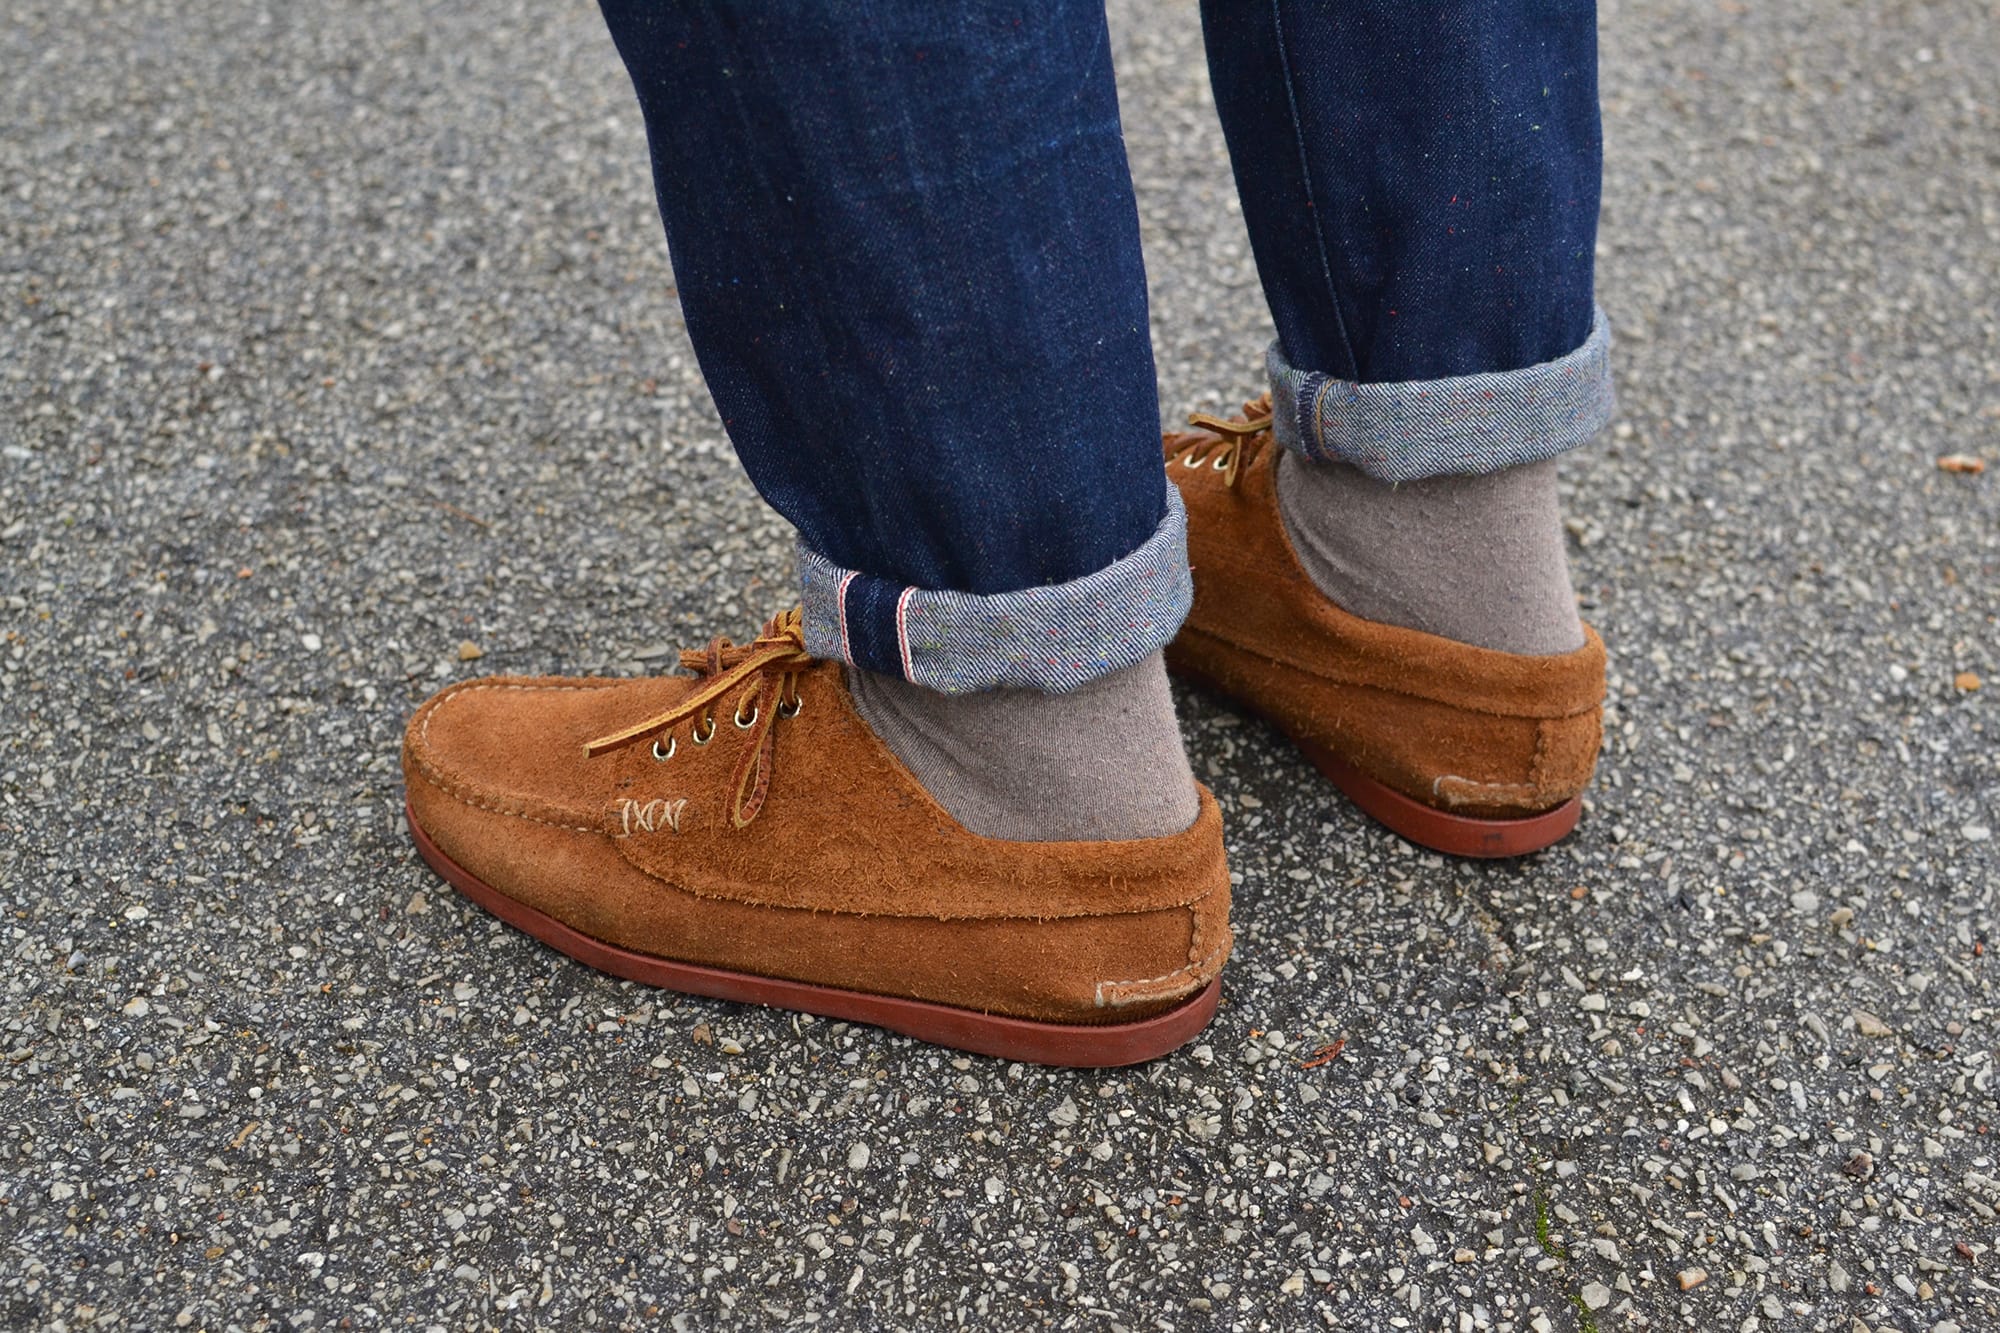 une tenue street heritage avec un jean tapered brut un pull col rond sur une chemise en denim et une veste Visvim Achse et des yuketen native shoes